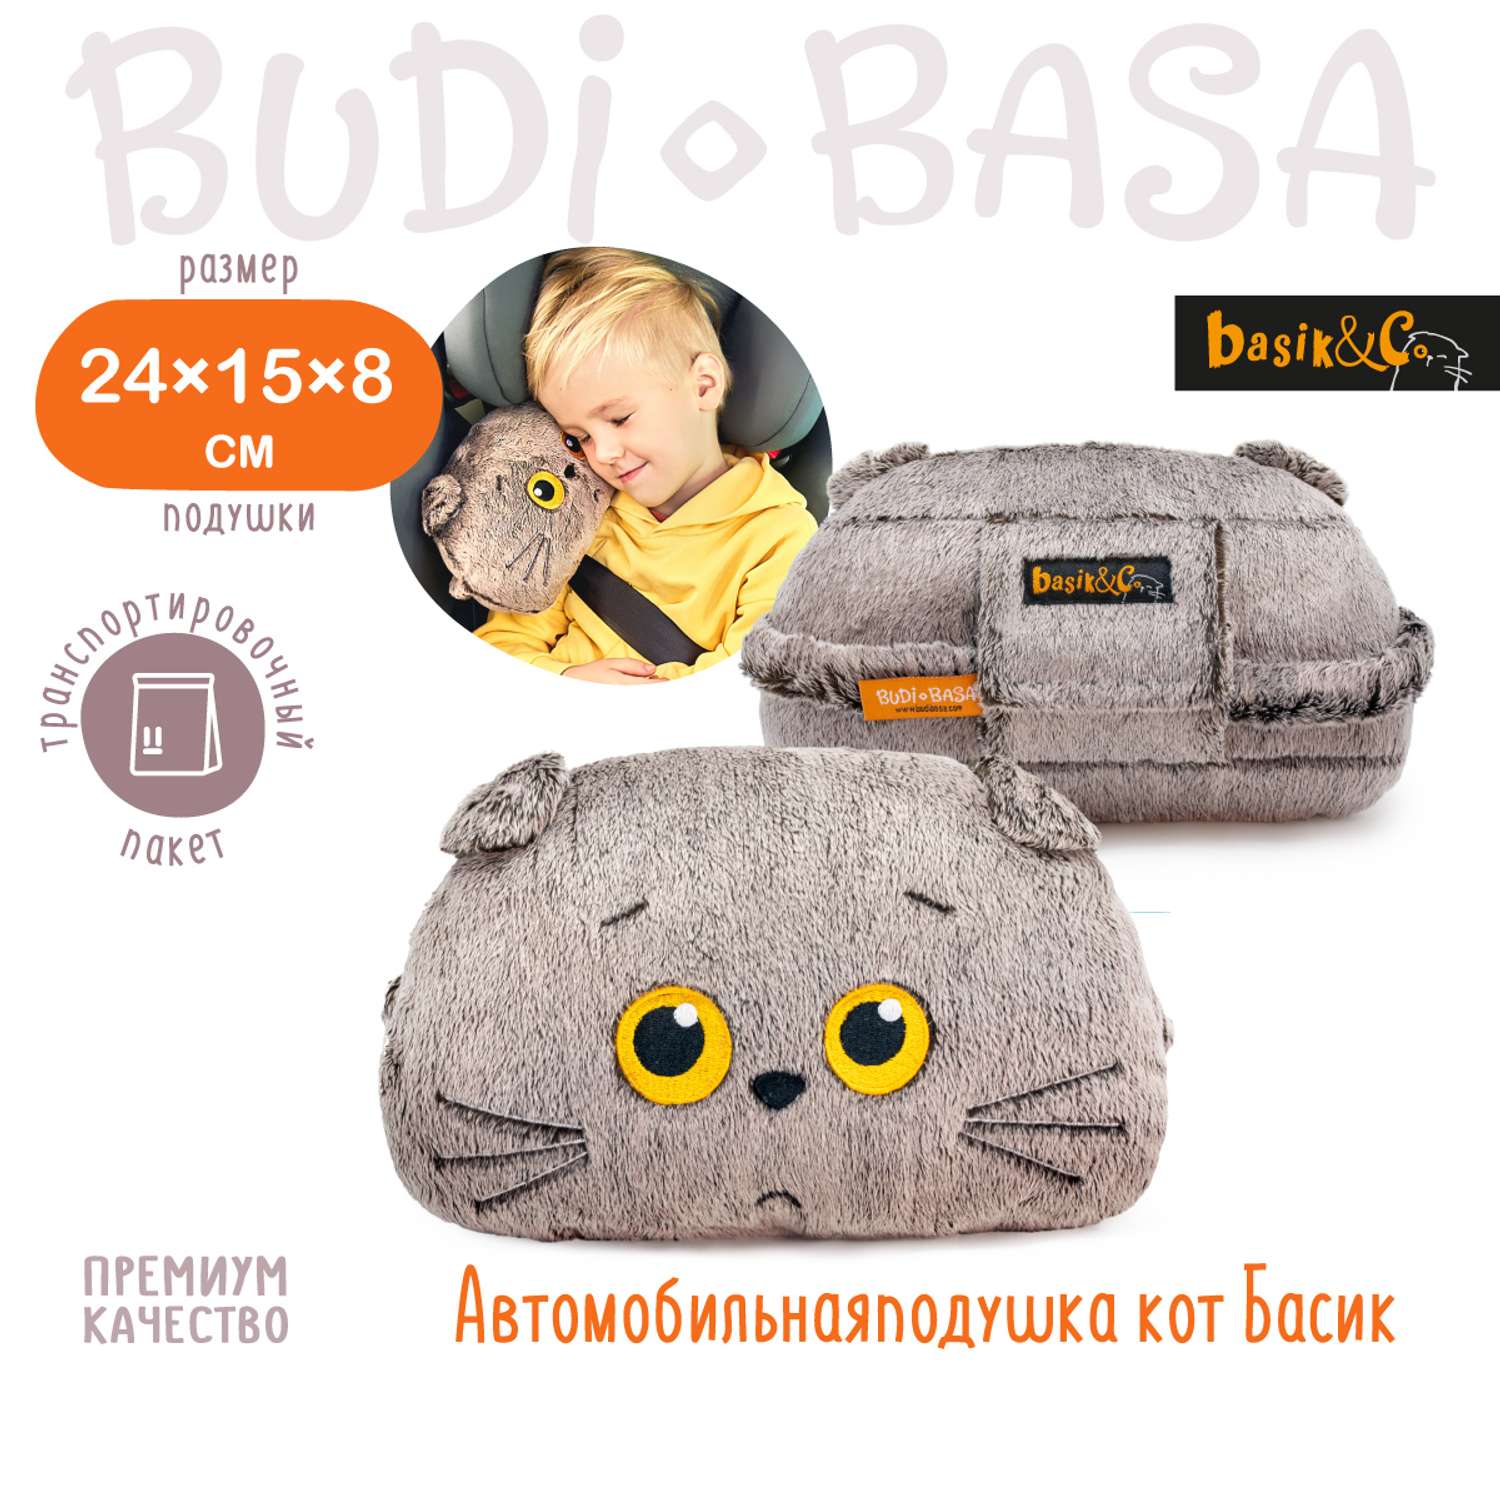 Мягкая игрушка BUDI BASA Автомобильная подушка Кот Басик 15 см Kp24-258 - фото 1